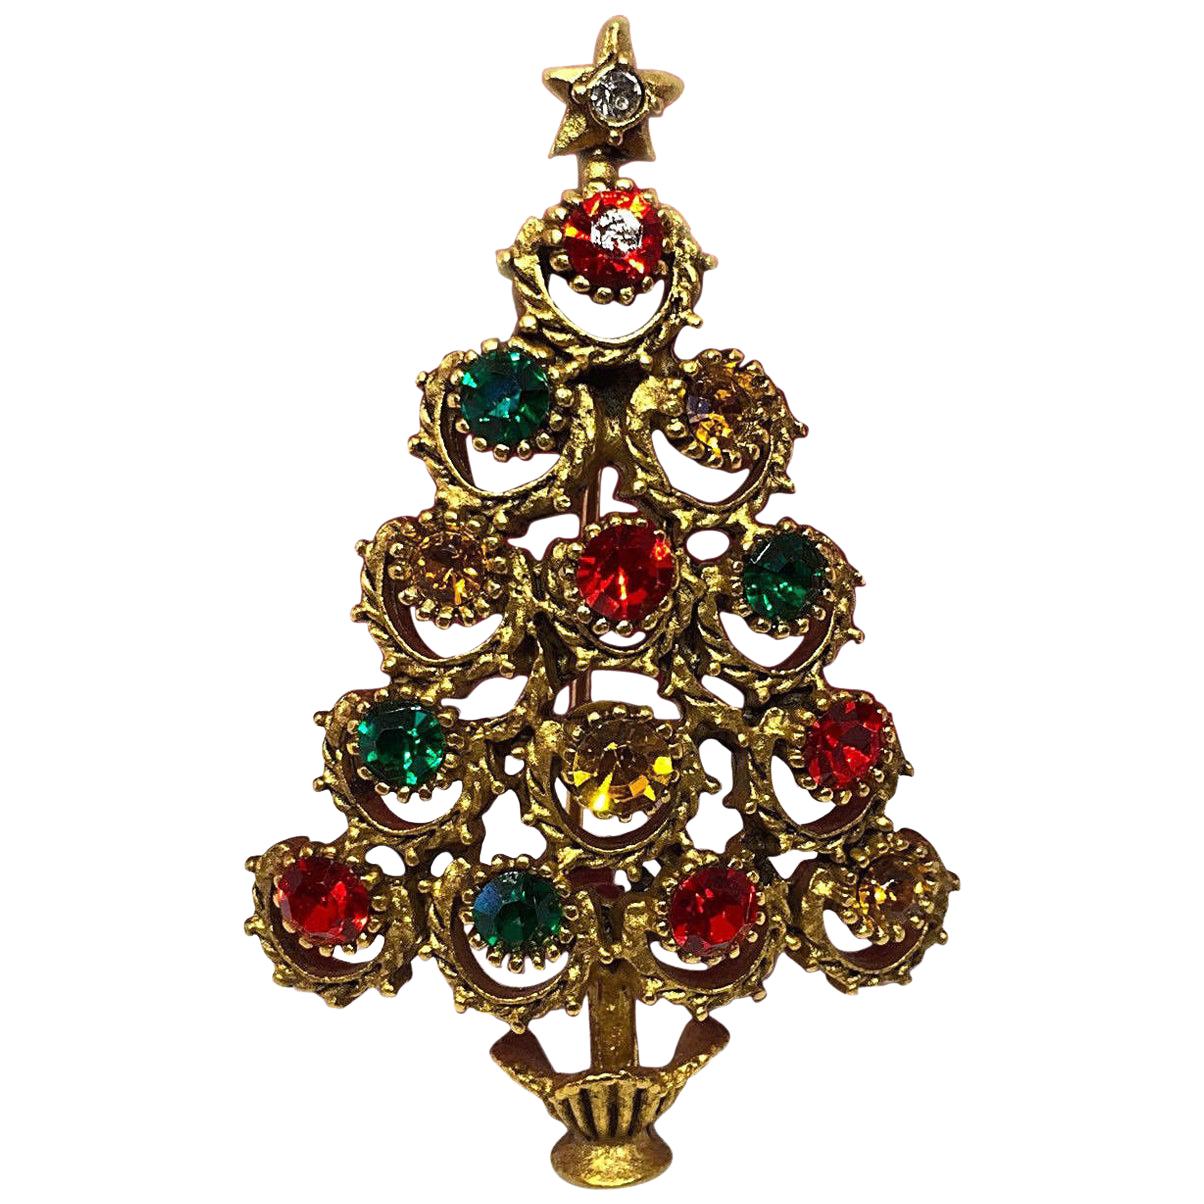 Broche arbre de Noël en fausse pierre précieuse signée BW par le designer Butler & Wilson